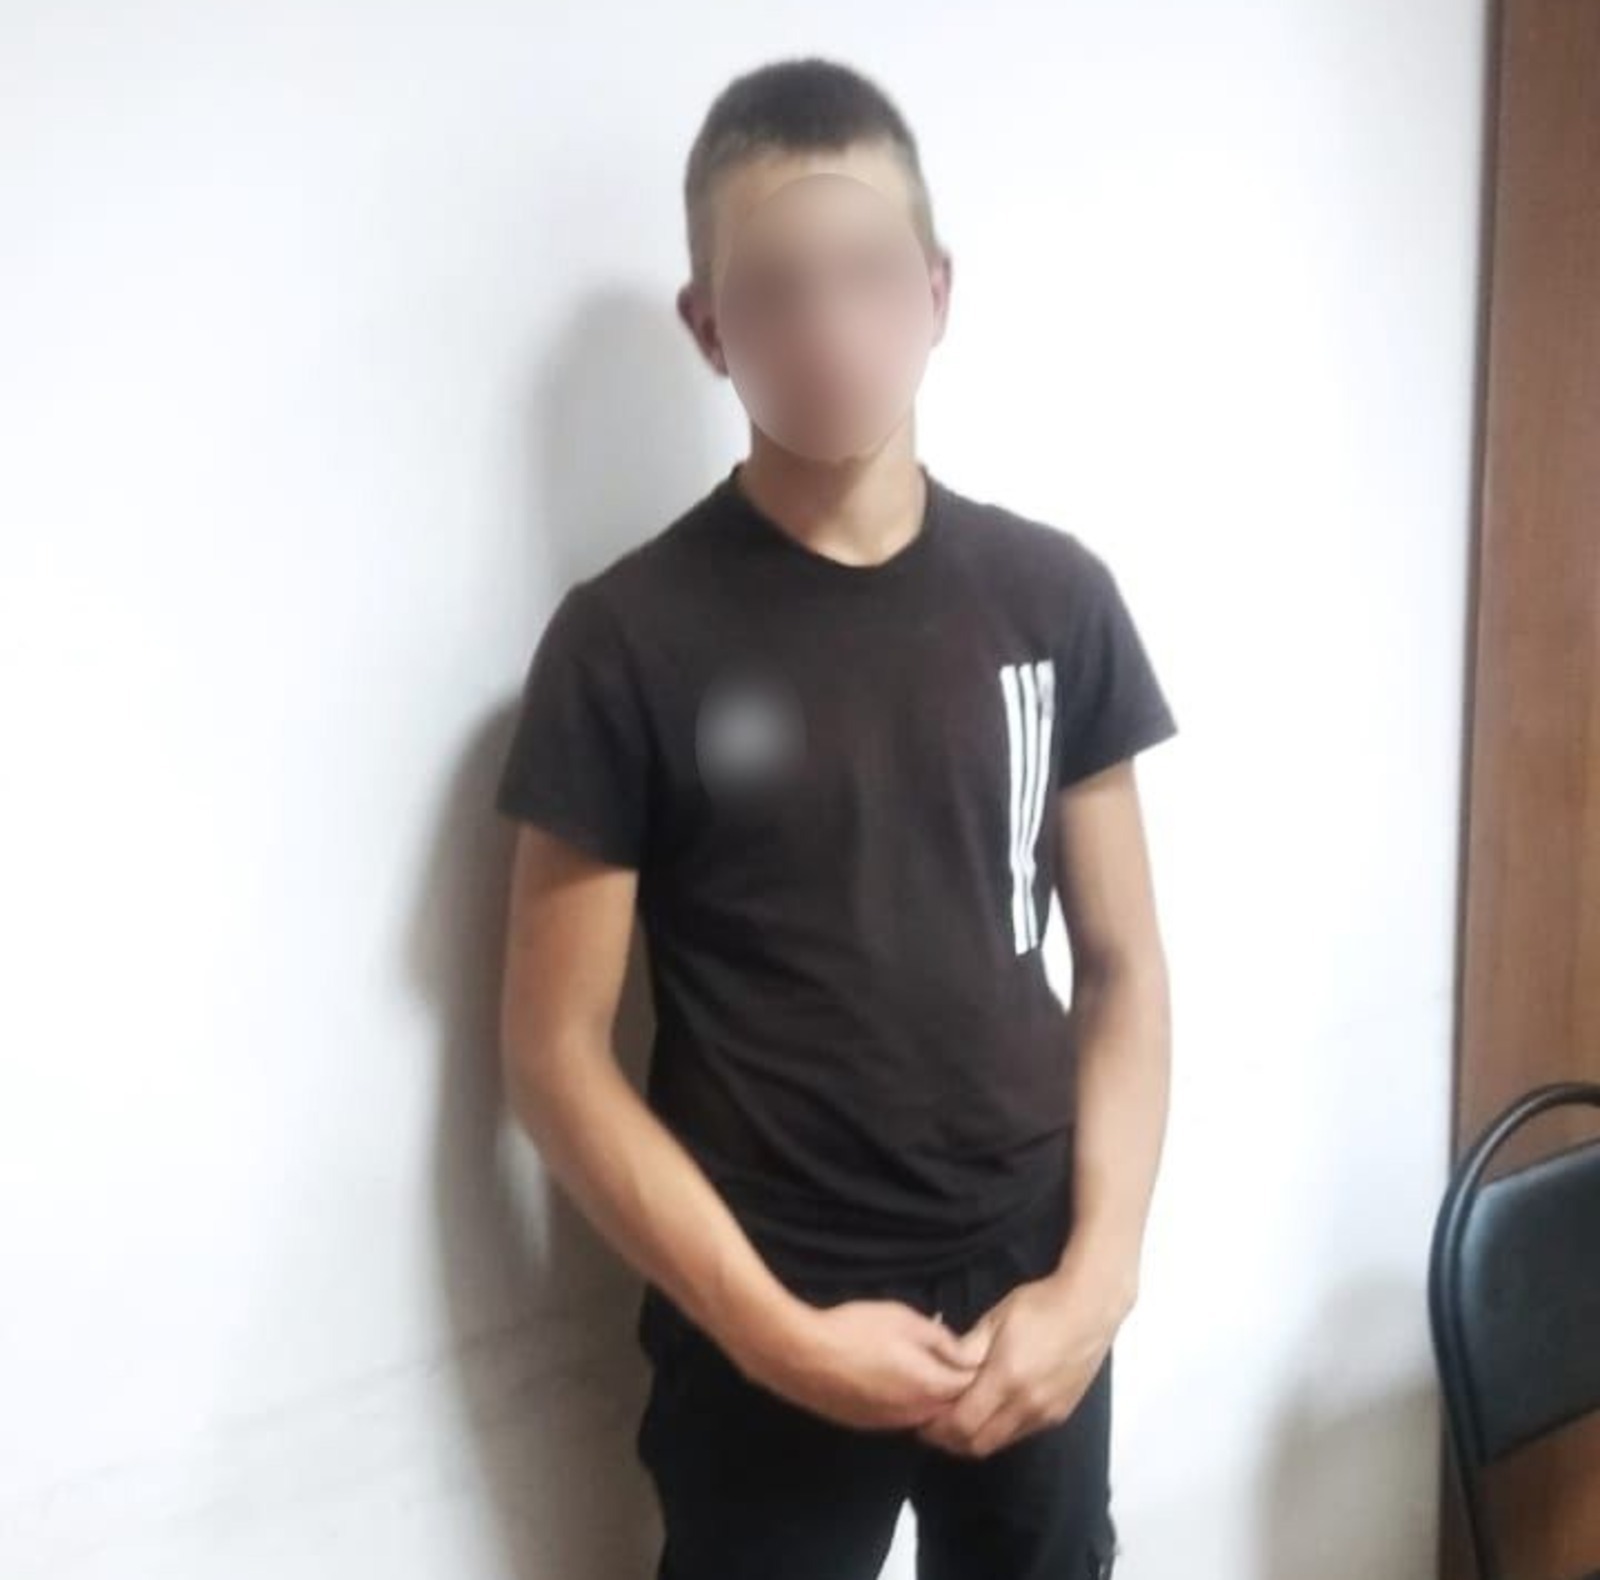 В Башкирии задержали подозреваемого в серии мошенничеств по схеме «Ваш сын попал в ДТП»